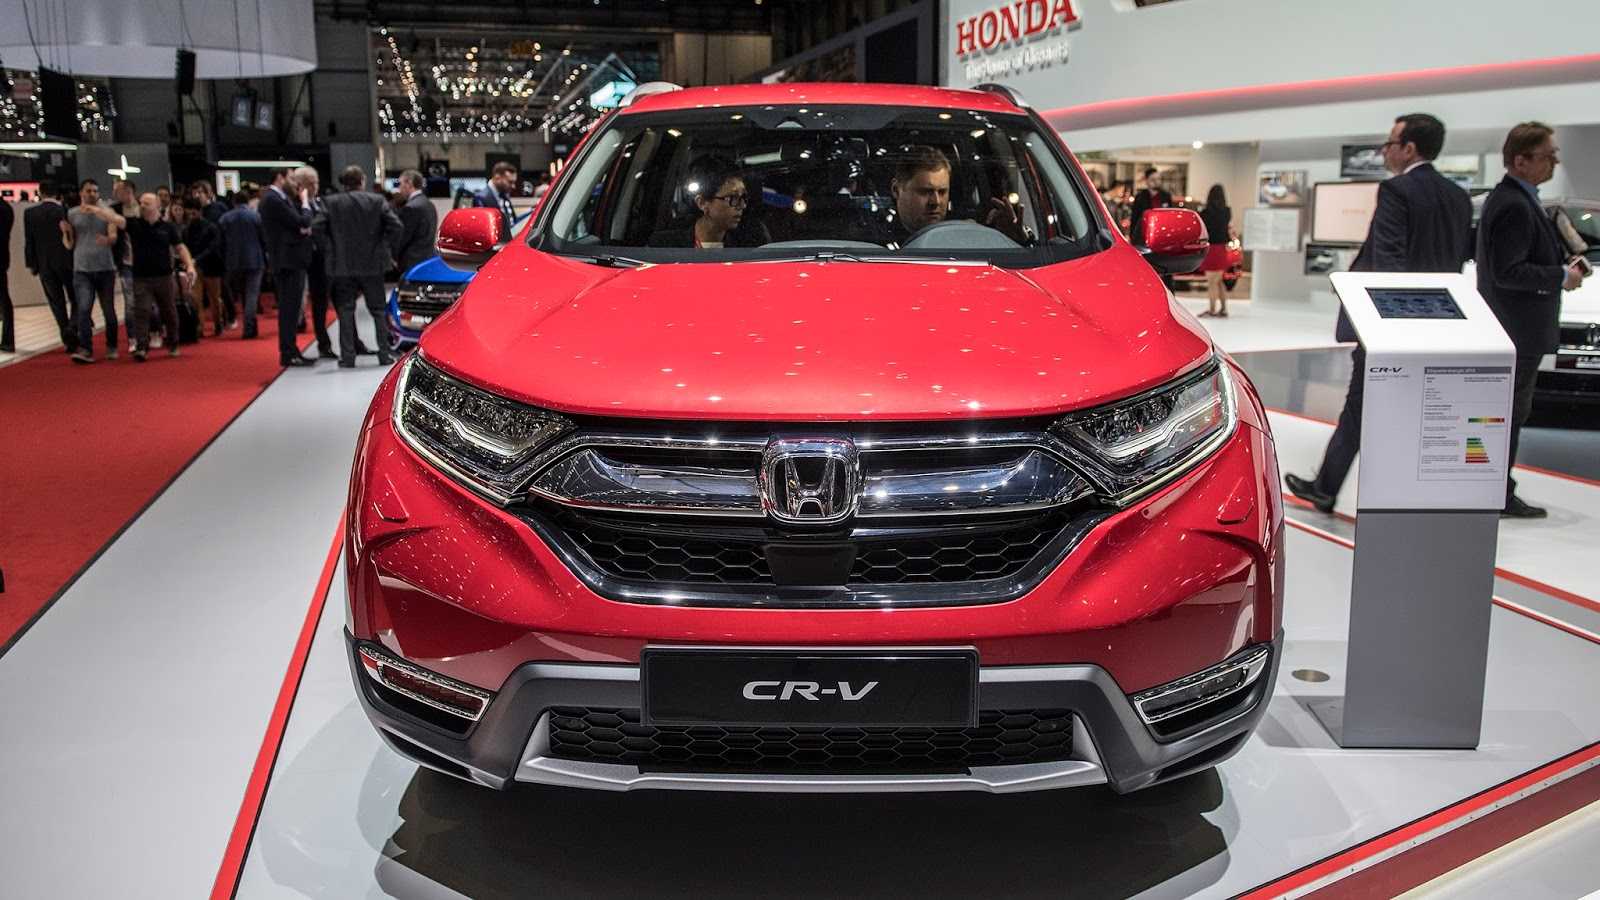 Honda cr-v 2020 года — динамичный кроссовер с турбомотором, полным приводом и усовершенствованной электроникой